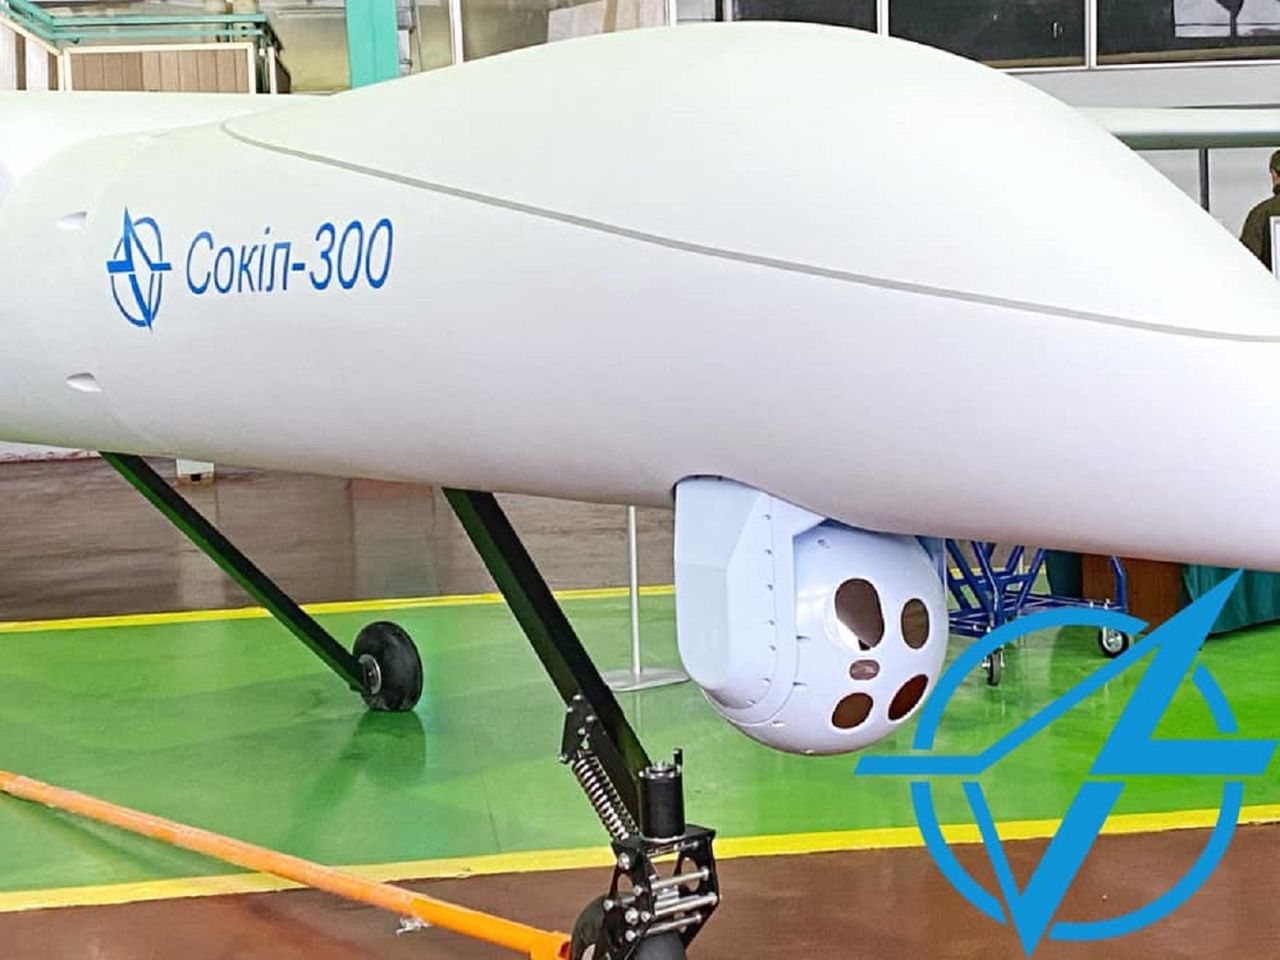 Ukraina pokazała nowy samolot bezzałogowy Sokół-300. Wkrótce testy w powietrzu